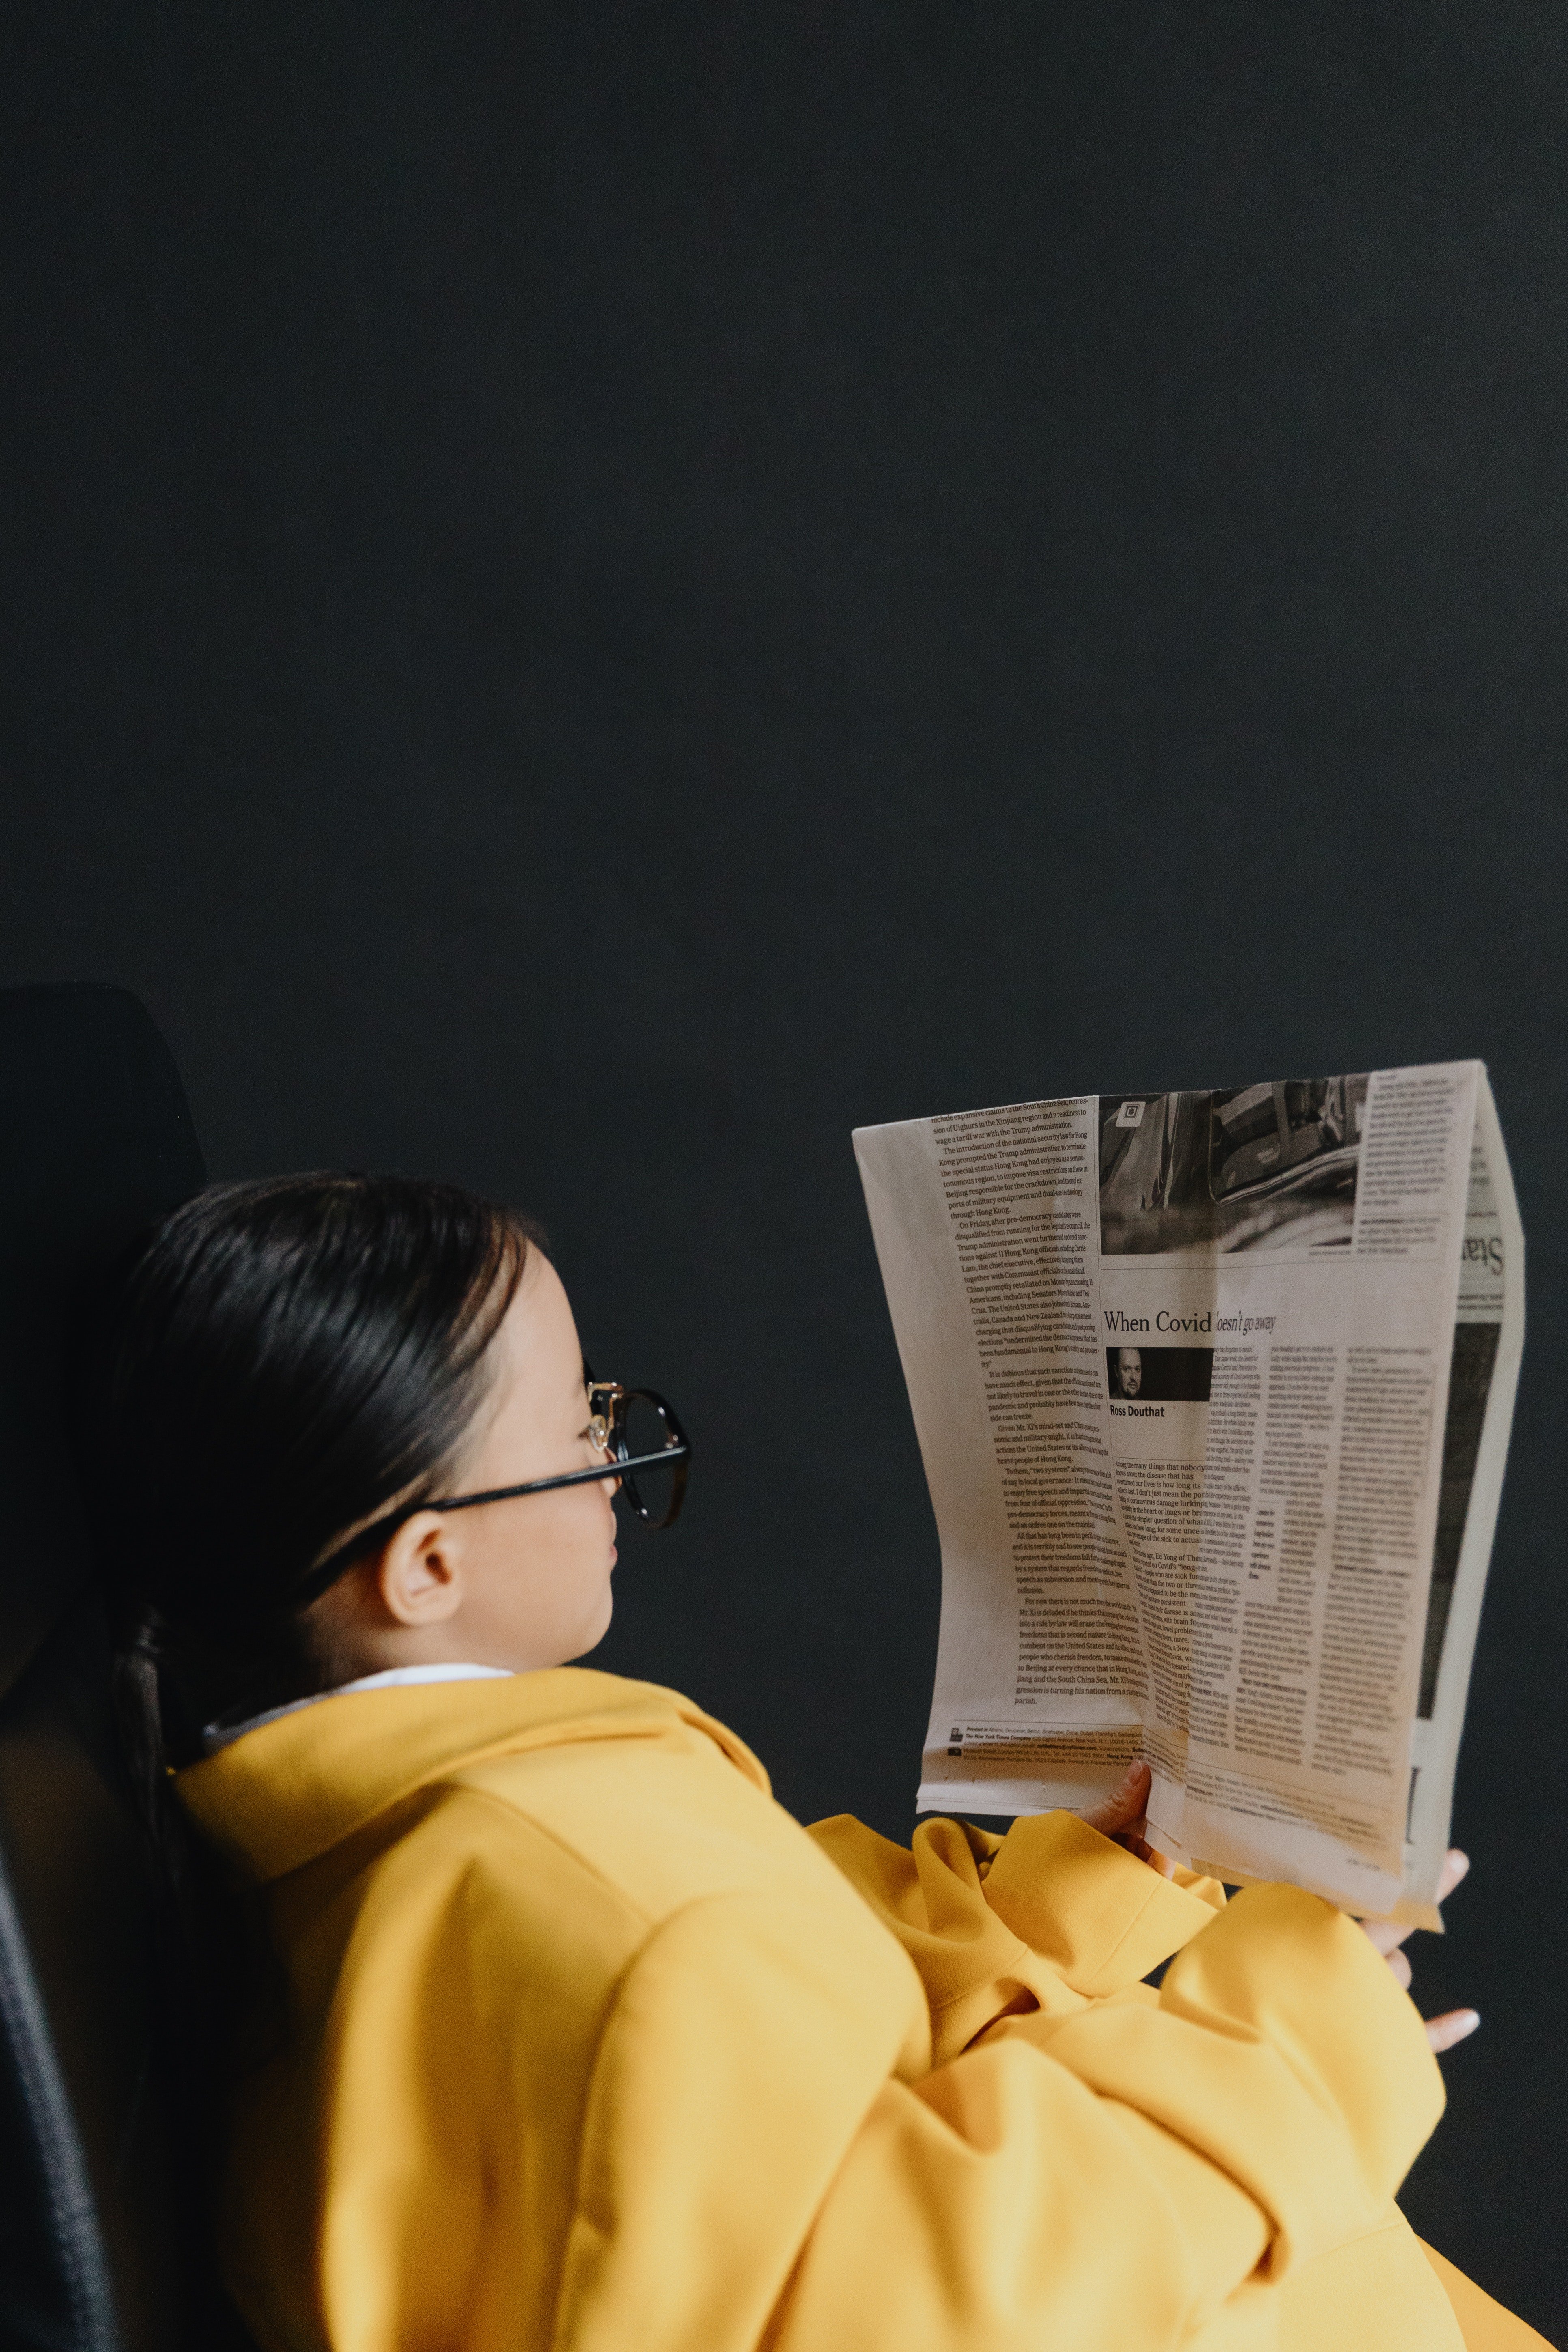 Una niña con lentes lee el periódico. | Foto: Pexels